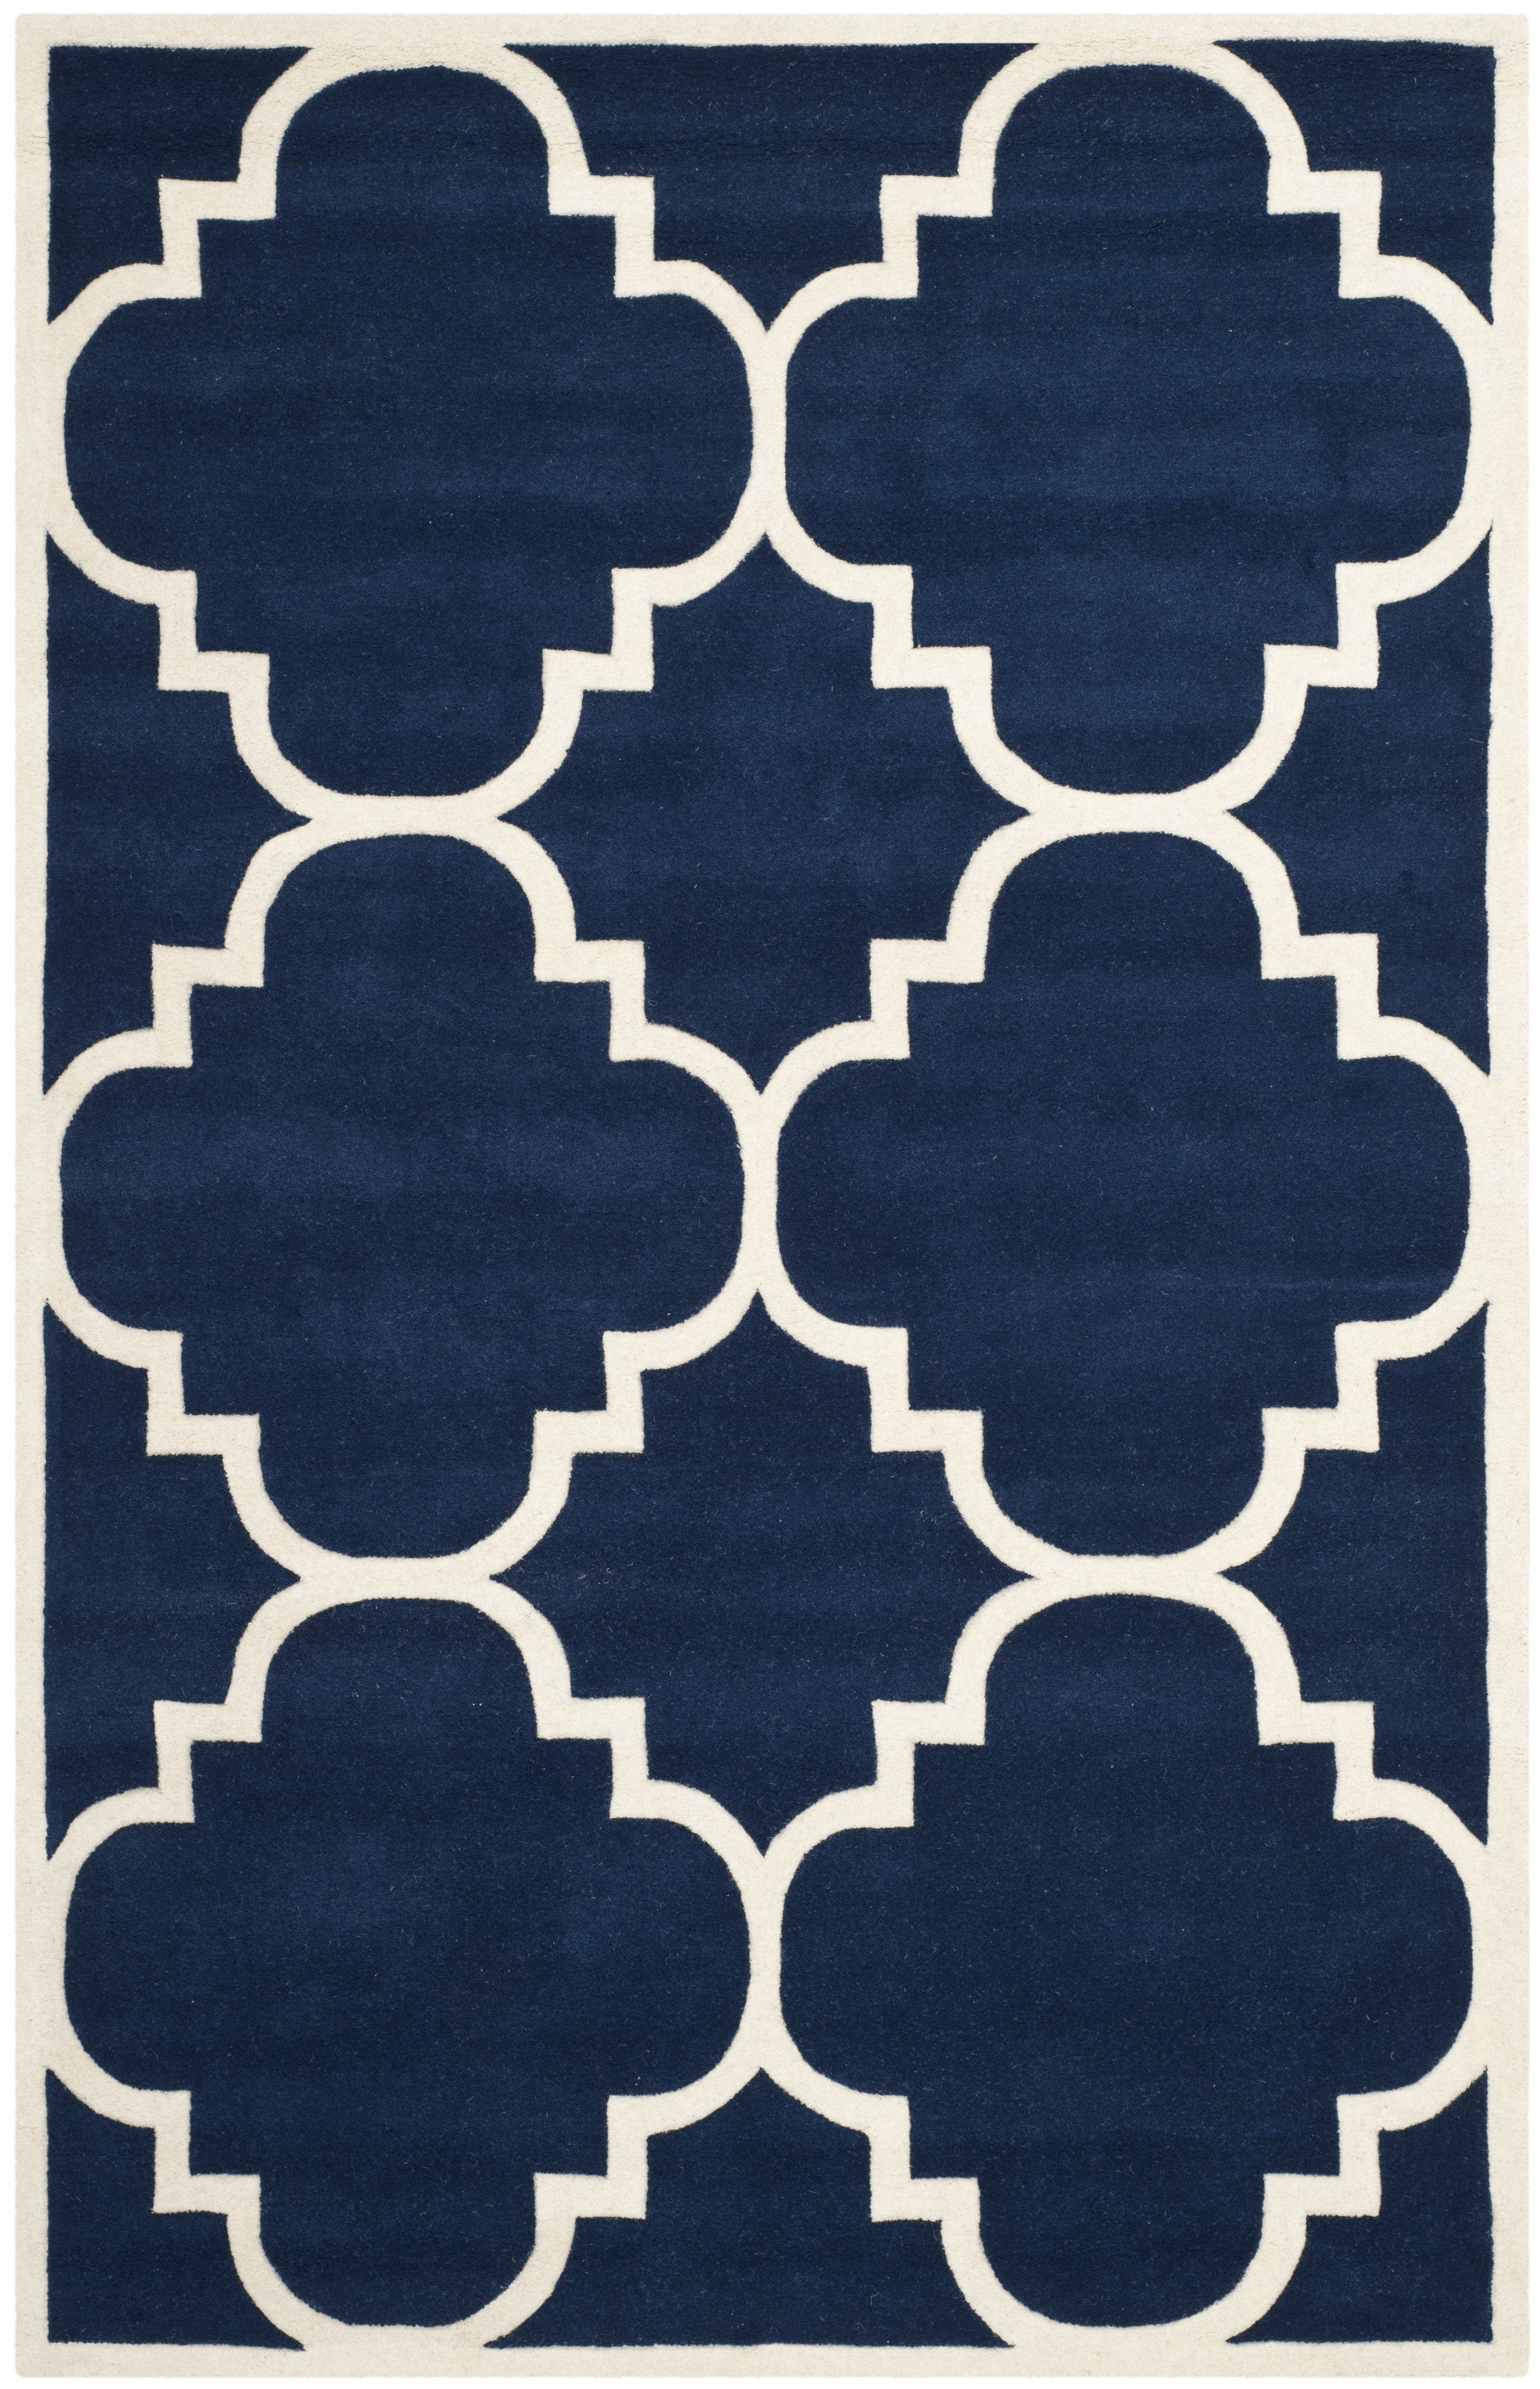 Tapis de salon interieur en bleu fonce & ivoire, 152 x 244 cm